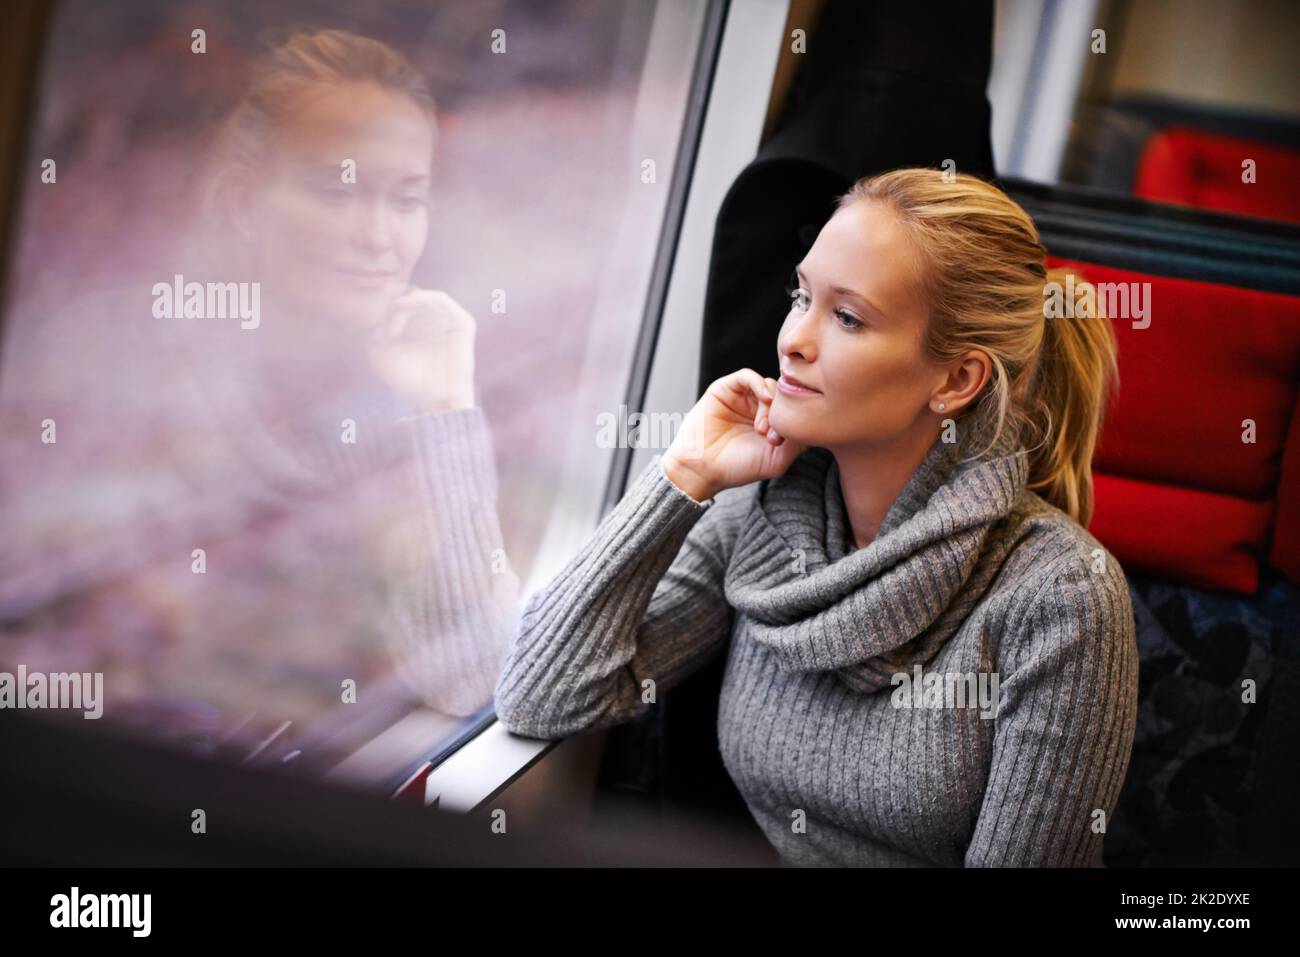 Erleben Sie die streifenhafte Landschaft. Kurzer Screenshot einer attraktiven jungen Frau, die mit dem Zug unterwegs ist. Stockfoto